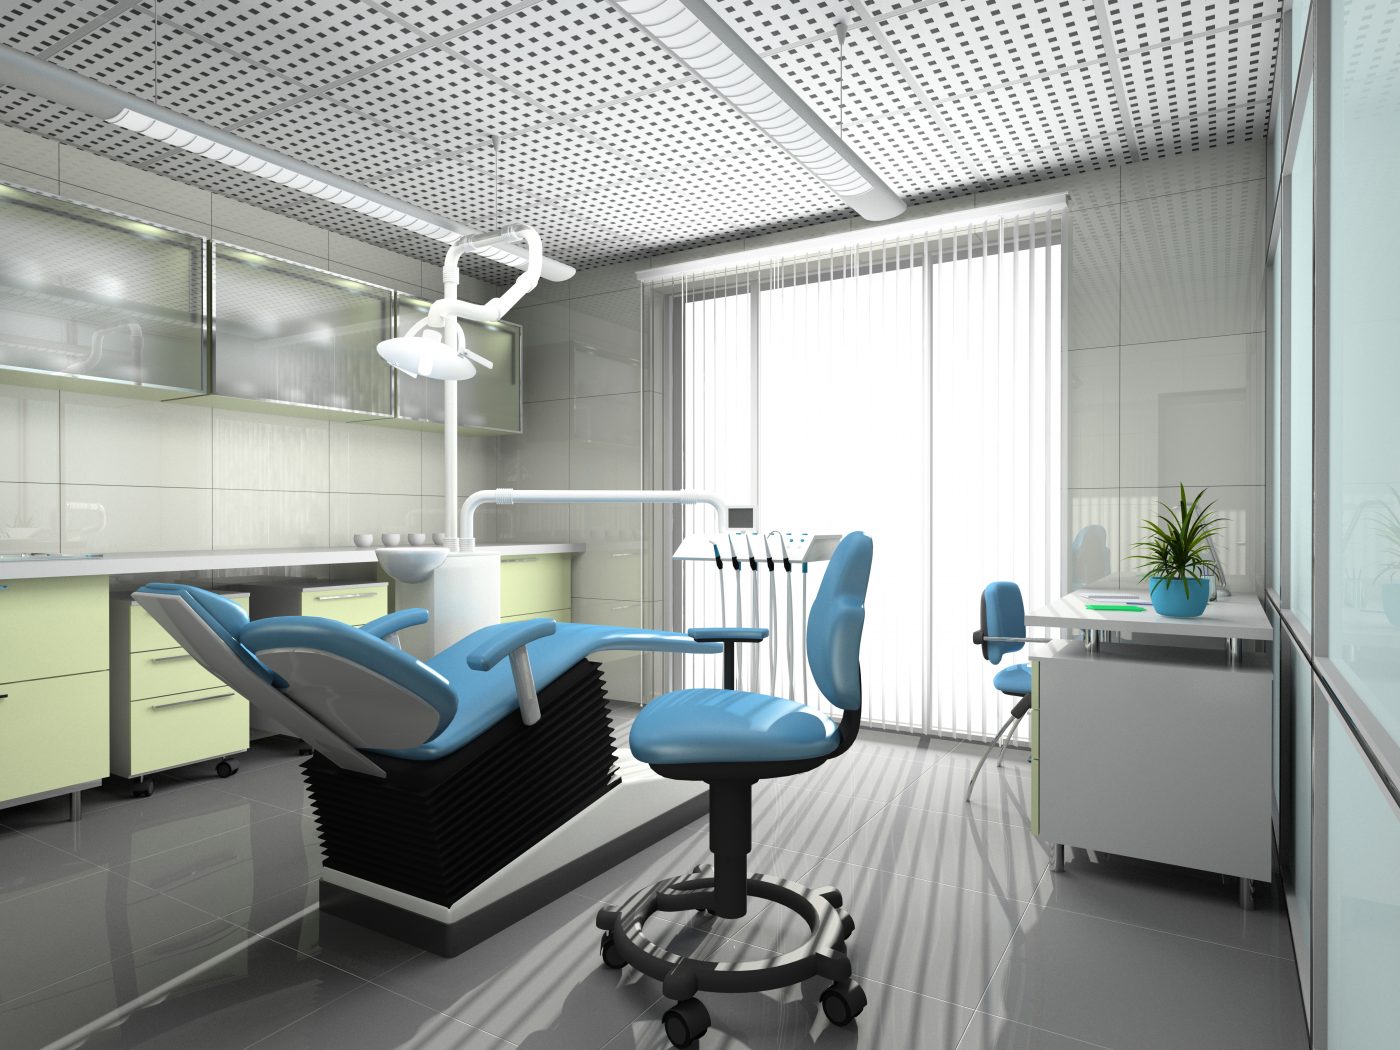 Interior of a dental office